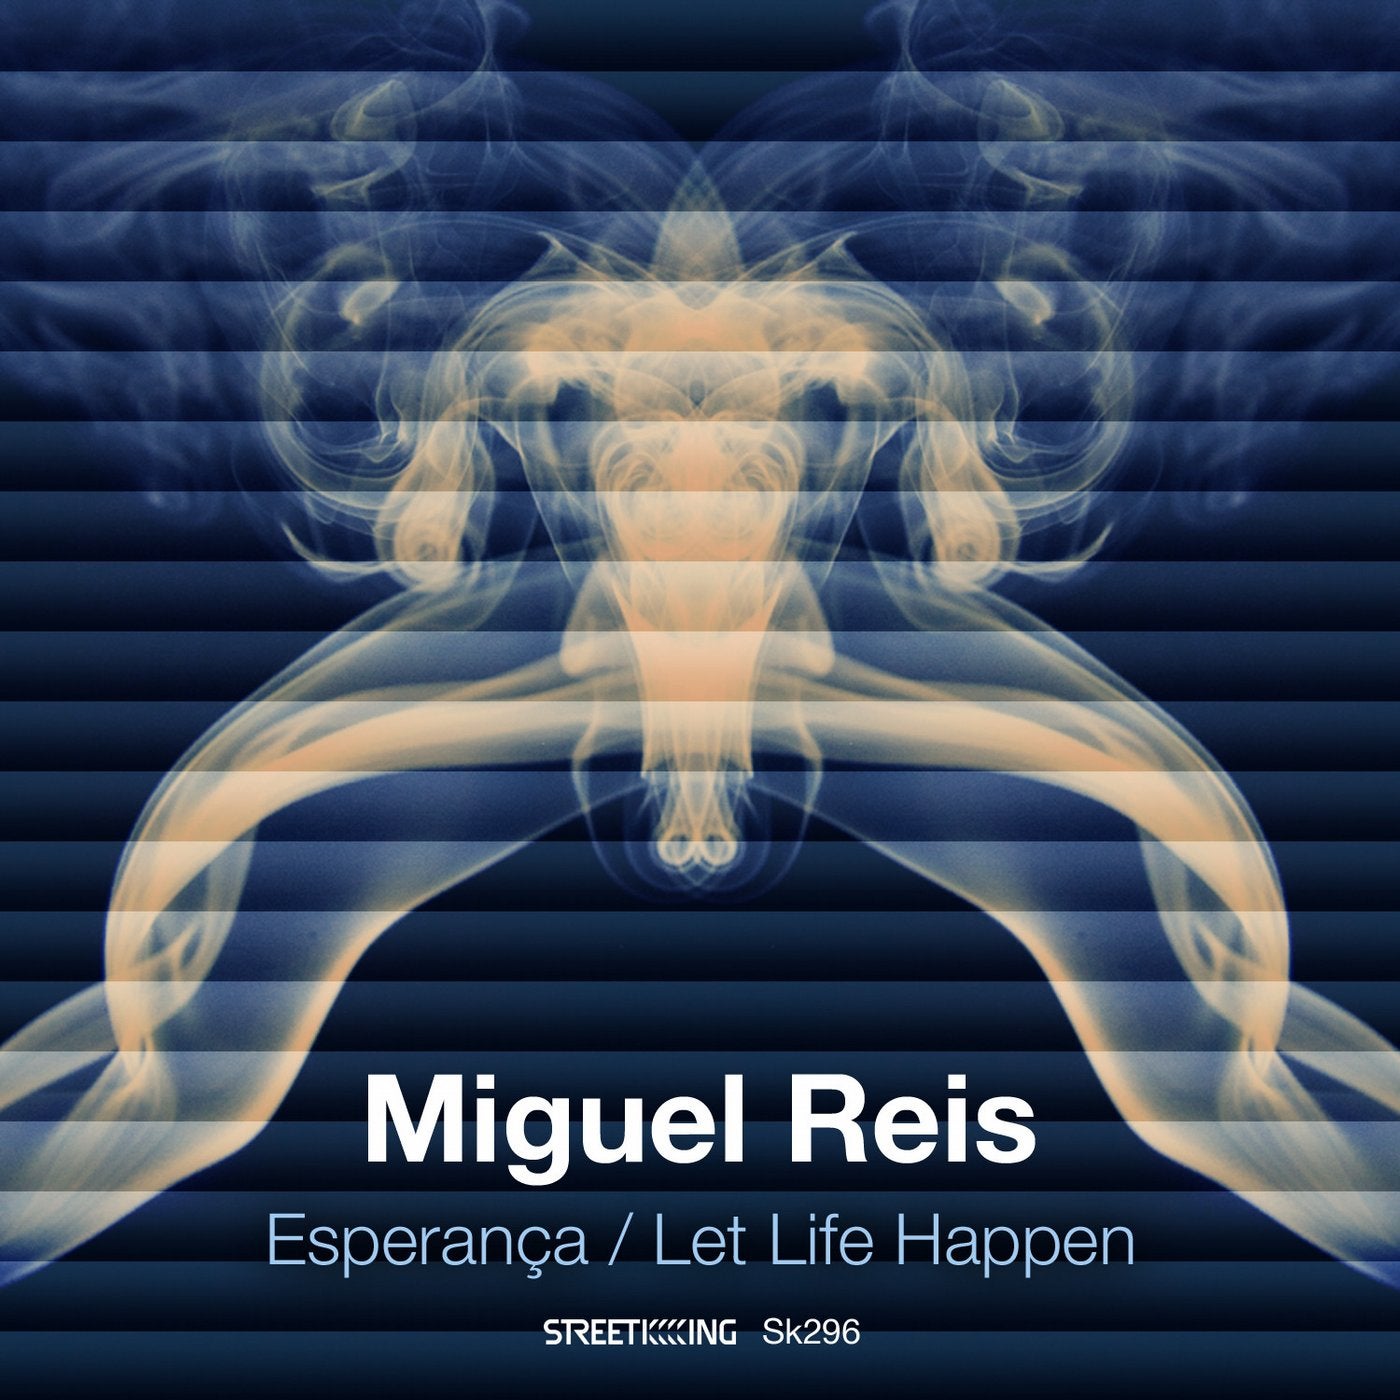 Esperanca / Let Life Happen